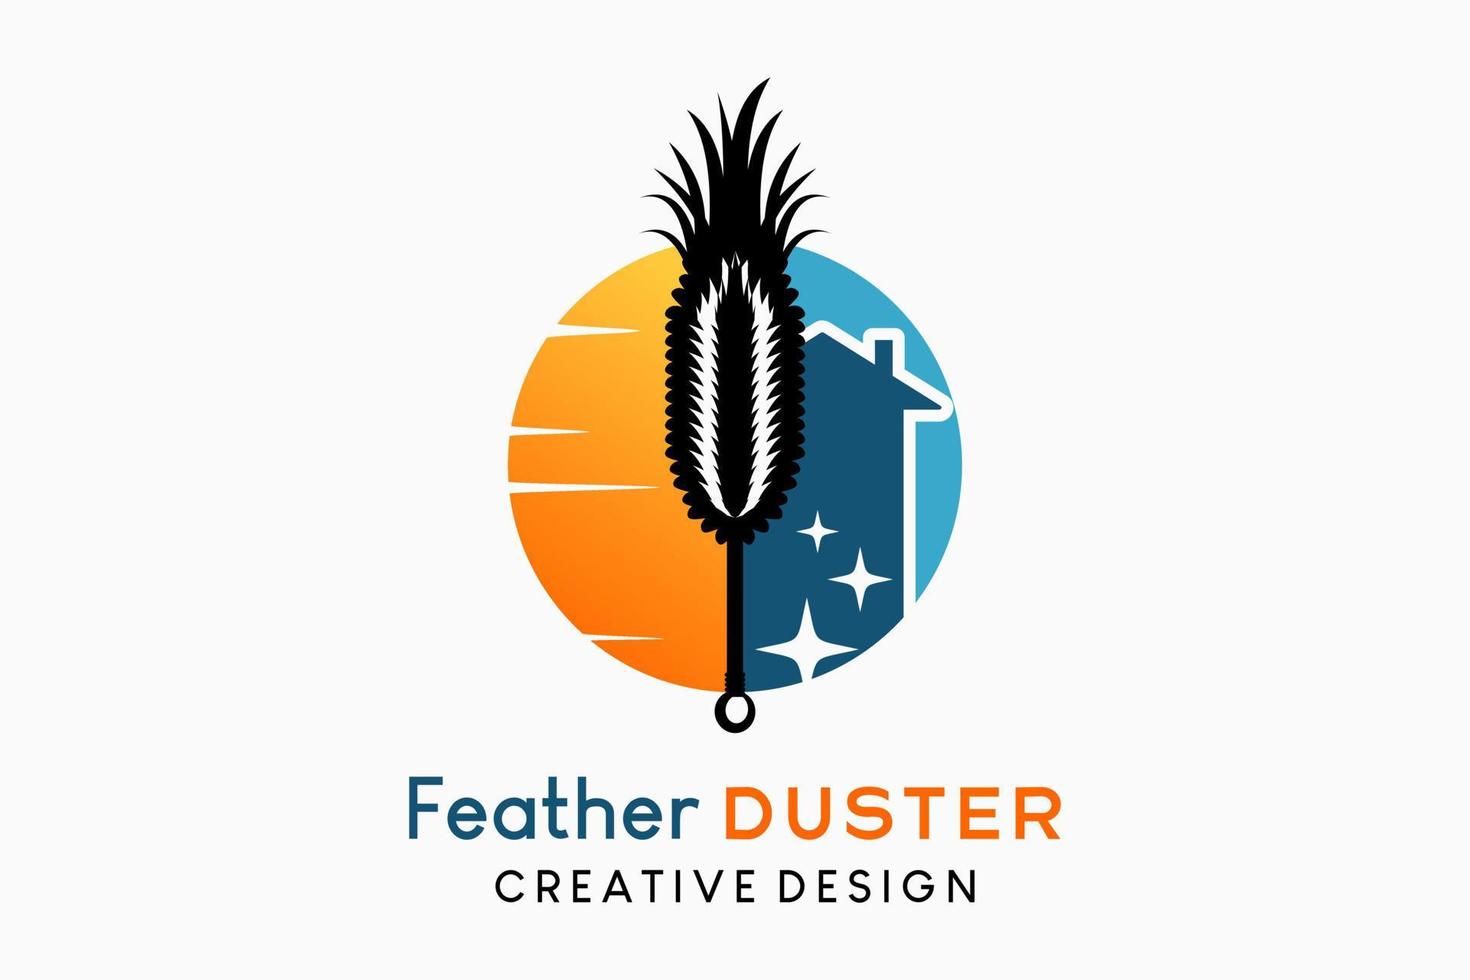 quill feather duster logo design traditionelle staubsaugerillustration, die silhouette eines federstaubwedels kombiniert mit dem sonnenuntergangssymbol und dem haussymbol vektor